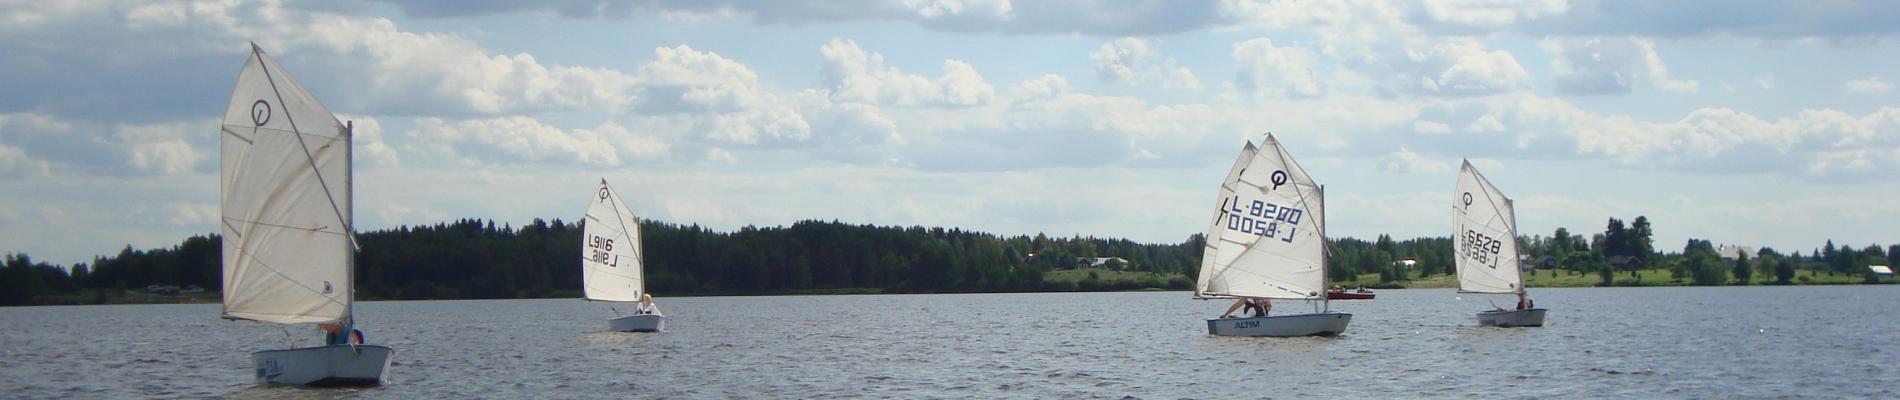 Piipsjärvi